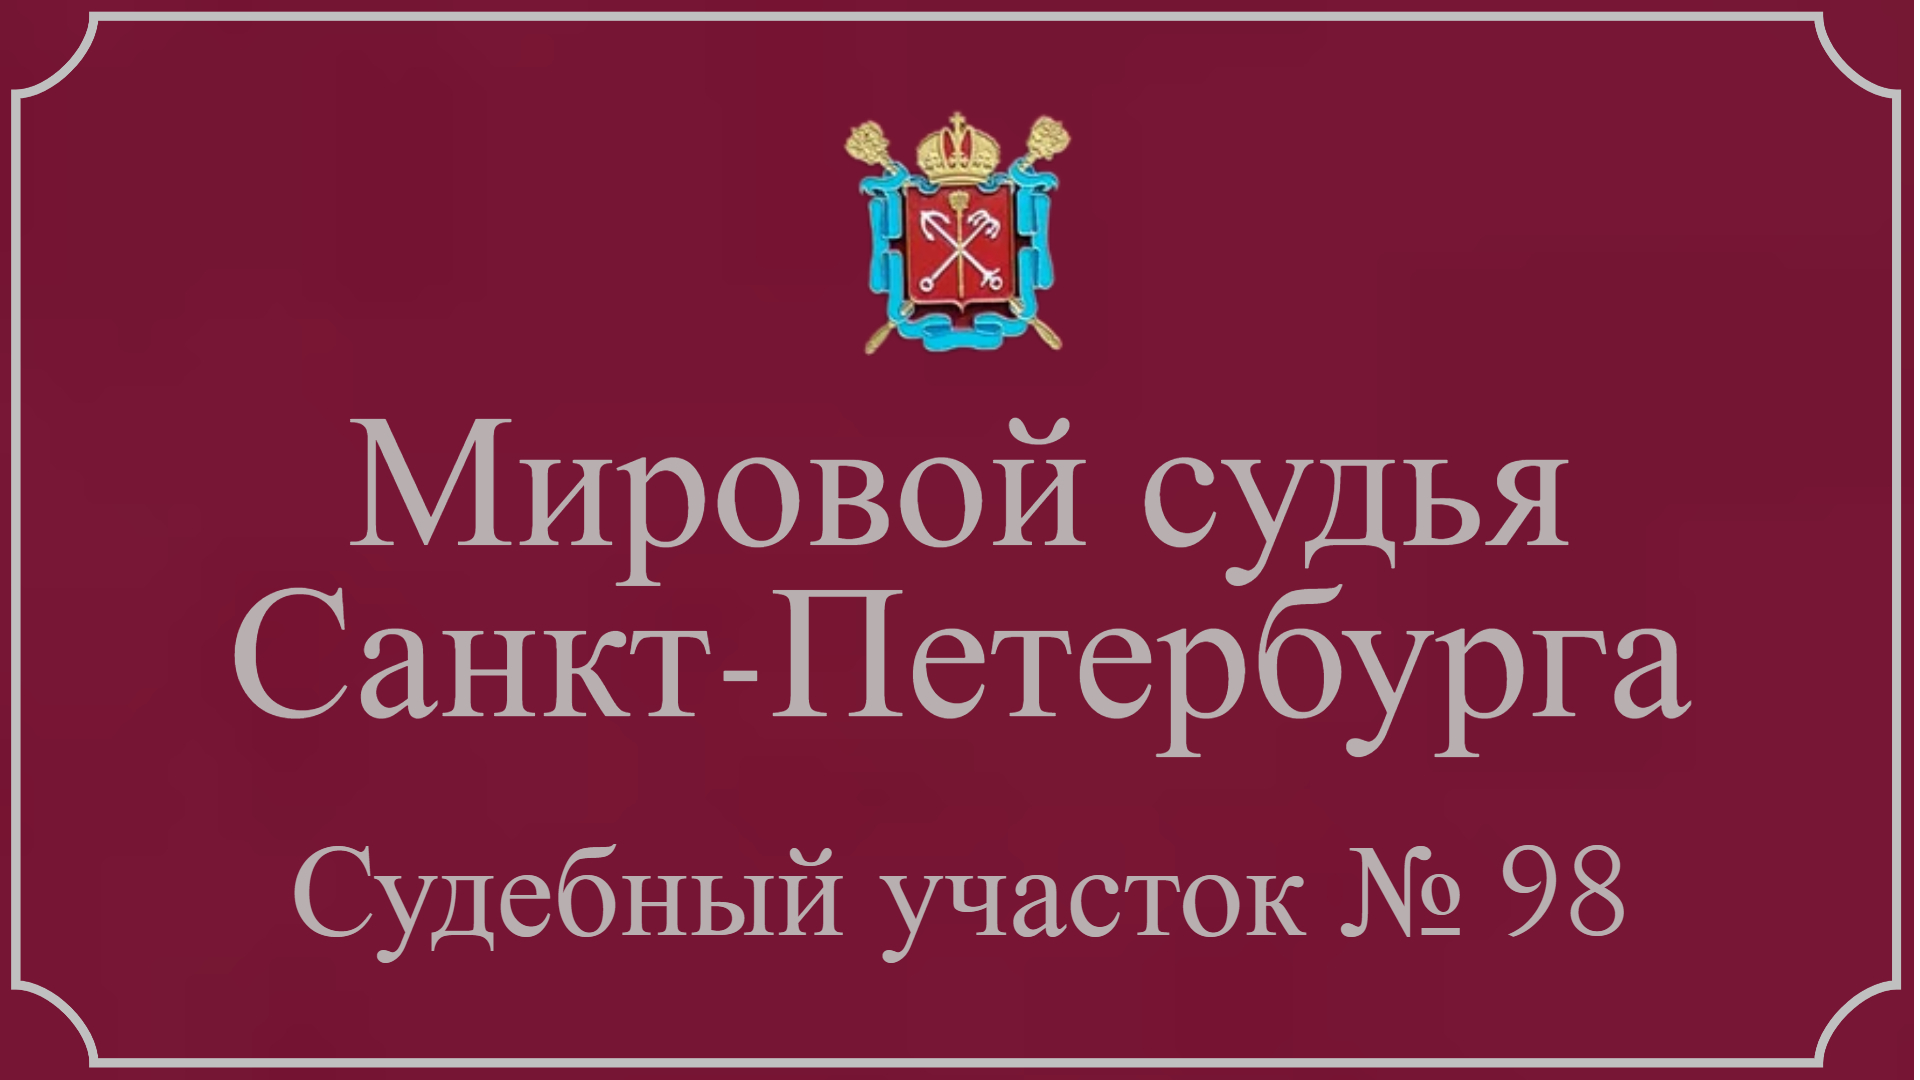 Информация по 98 судебному участку в Санкт-Петербурге.